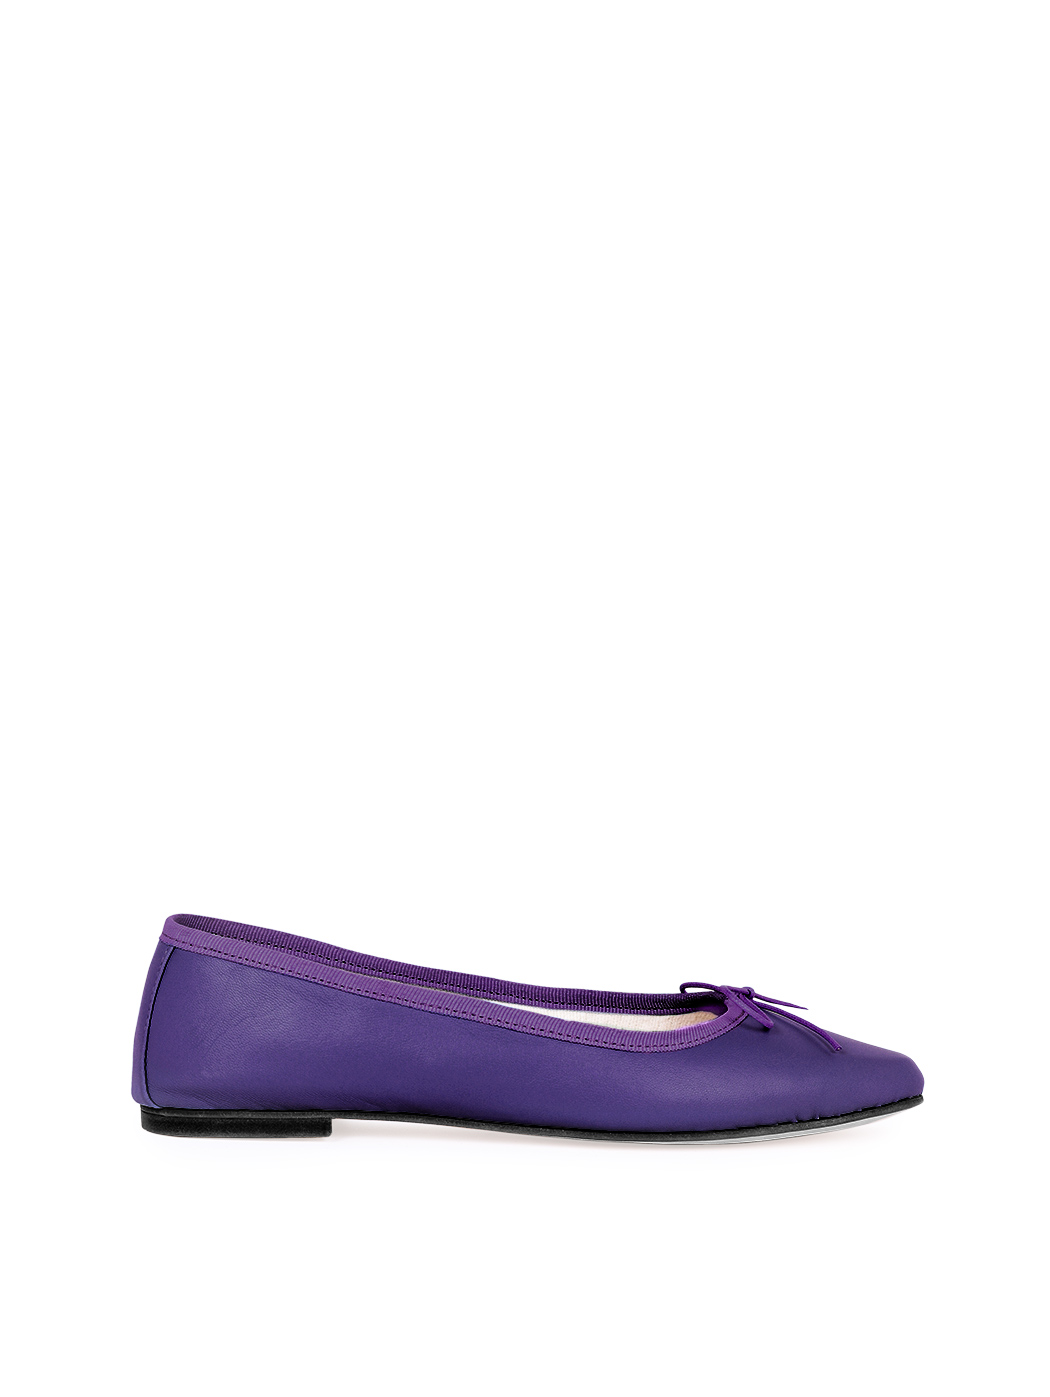 芭蕾平底鞋 - 紫色 紫色